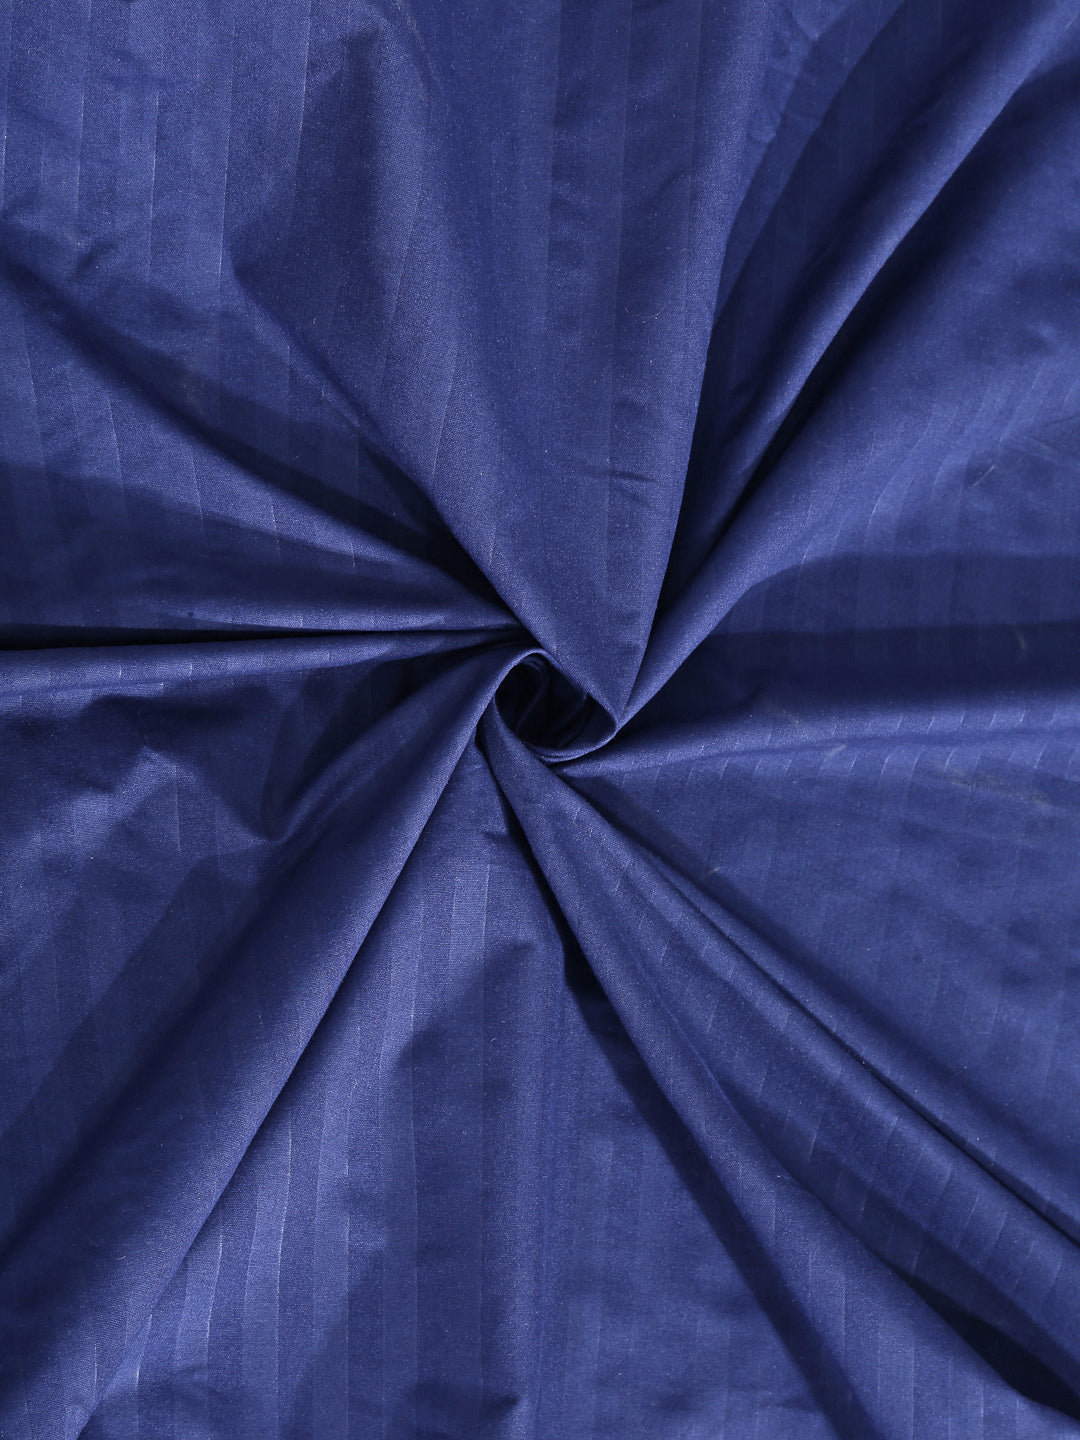 Arrabi Blue Stripes TC Cotton Blend Single Size Bedsheet with 1 Pillow Cover (220 X 150 cm)